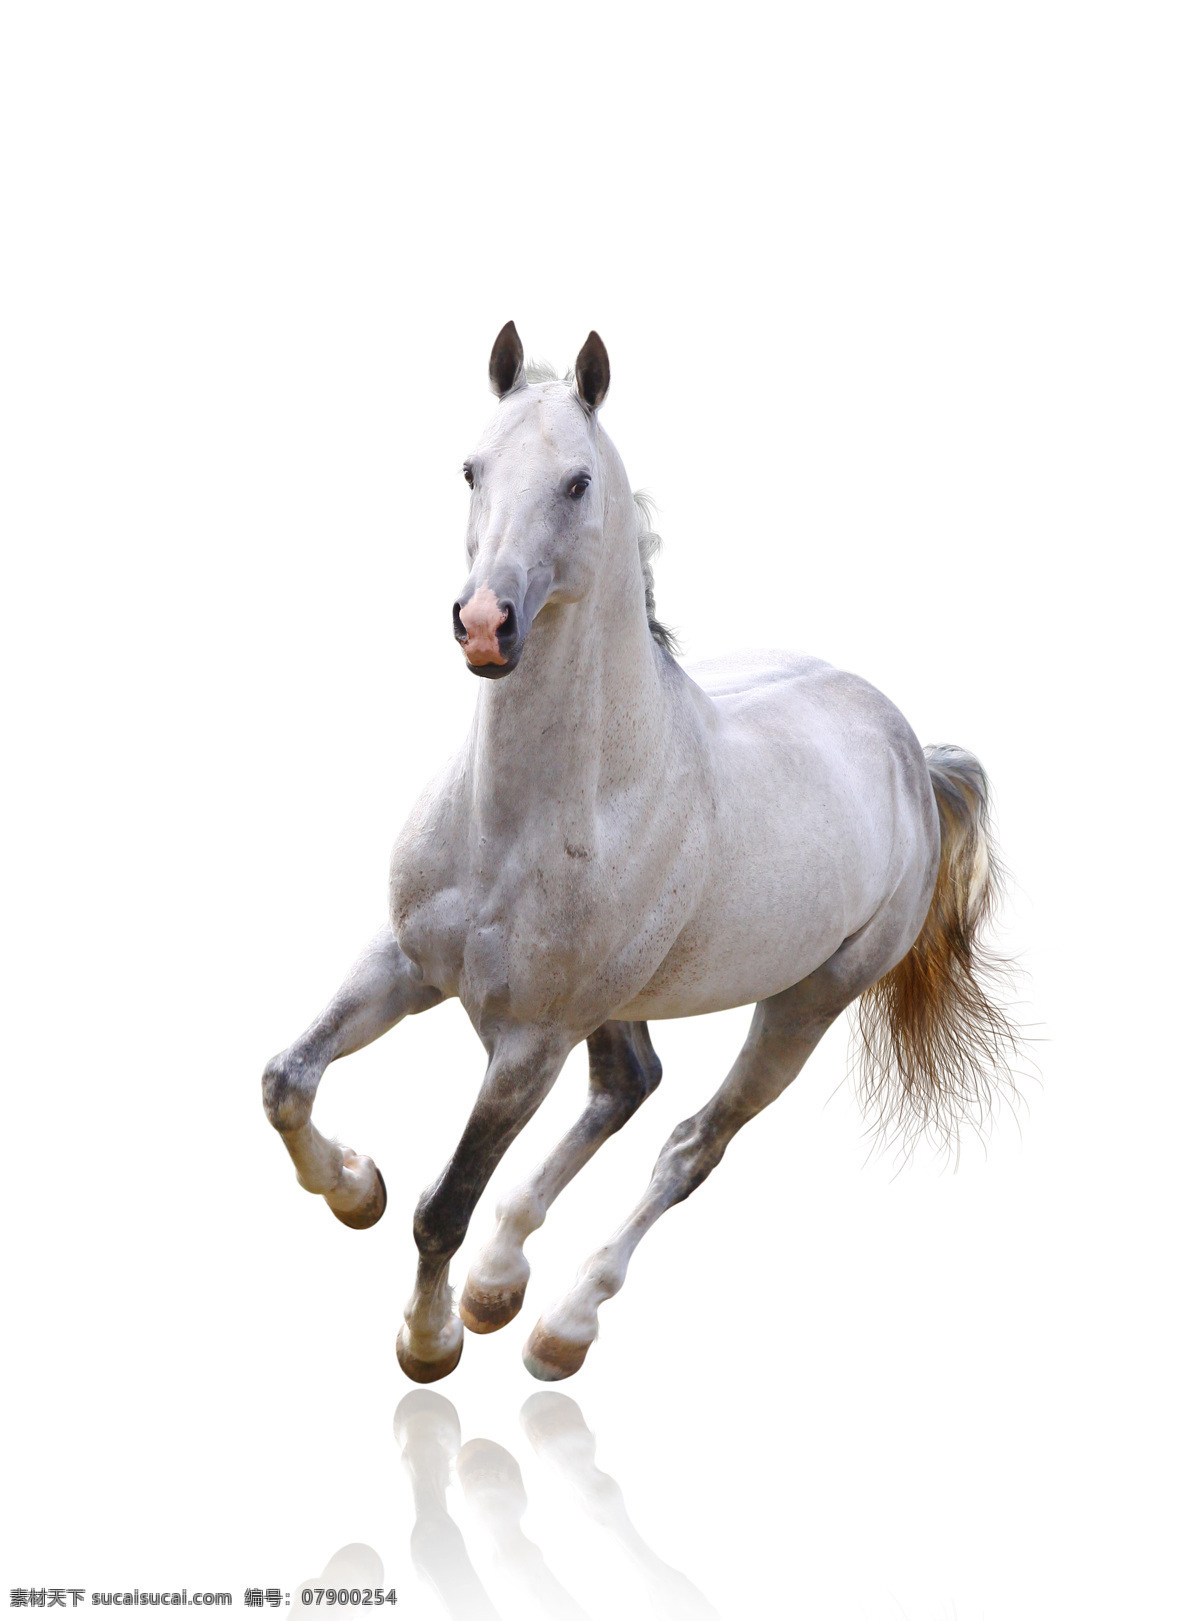 狂奔 白色 马 一匹 奔跑 白马 飞奔 骏马 马匹 小马驹 动物 陆地动物 生物世界